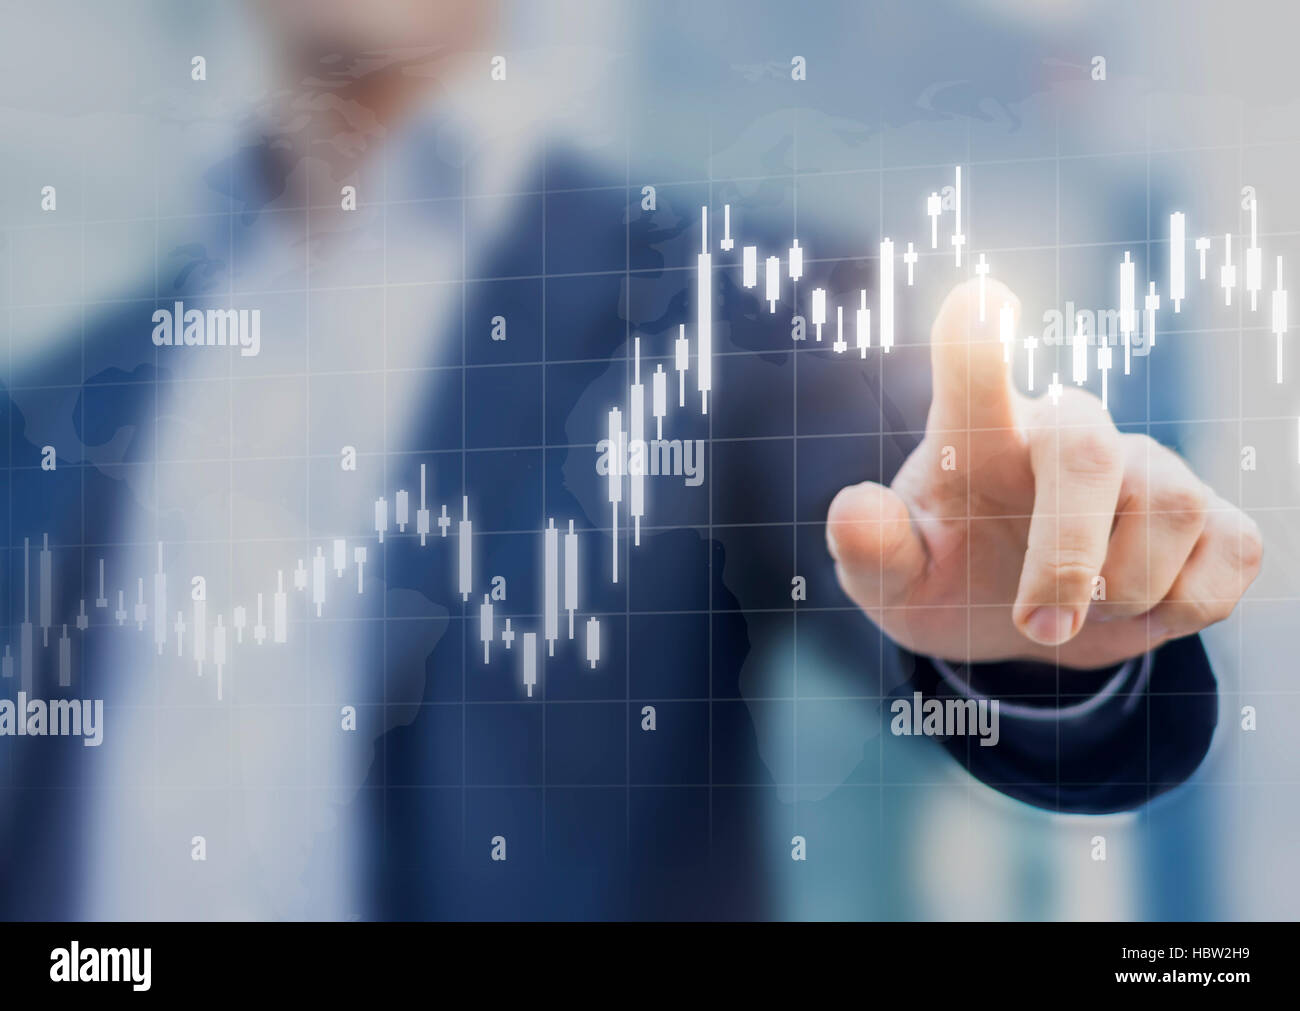 Graphique montrant les augmentation de prix en stock market, concept abstrait à propos de finances, de personne d'affaires touching chart Banque D'Images